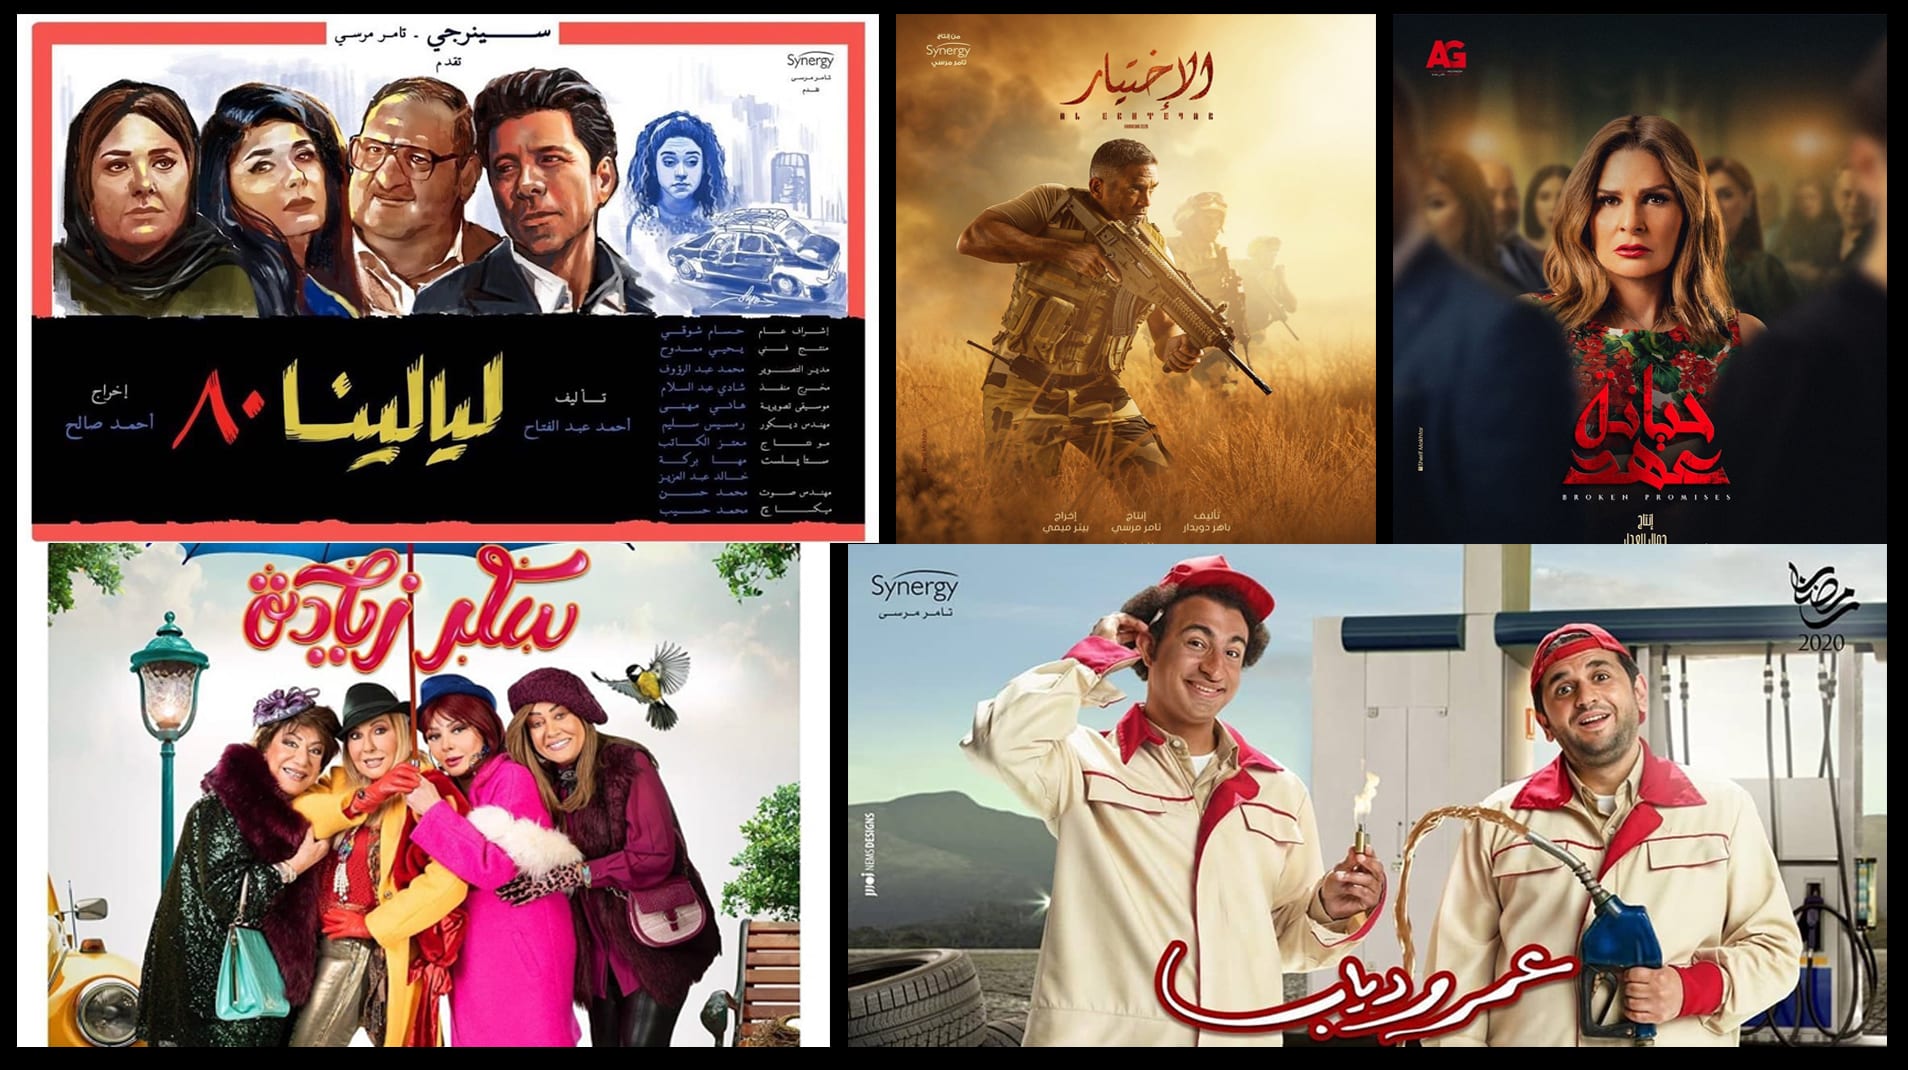 المسلسلات المصرية في رمضان 2020